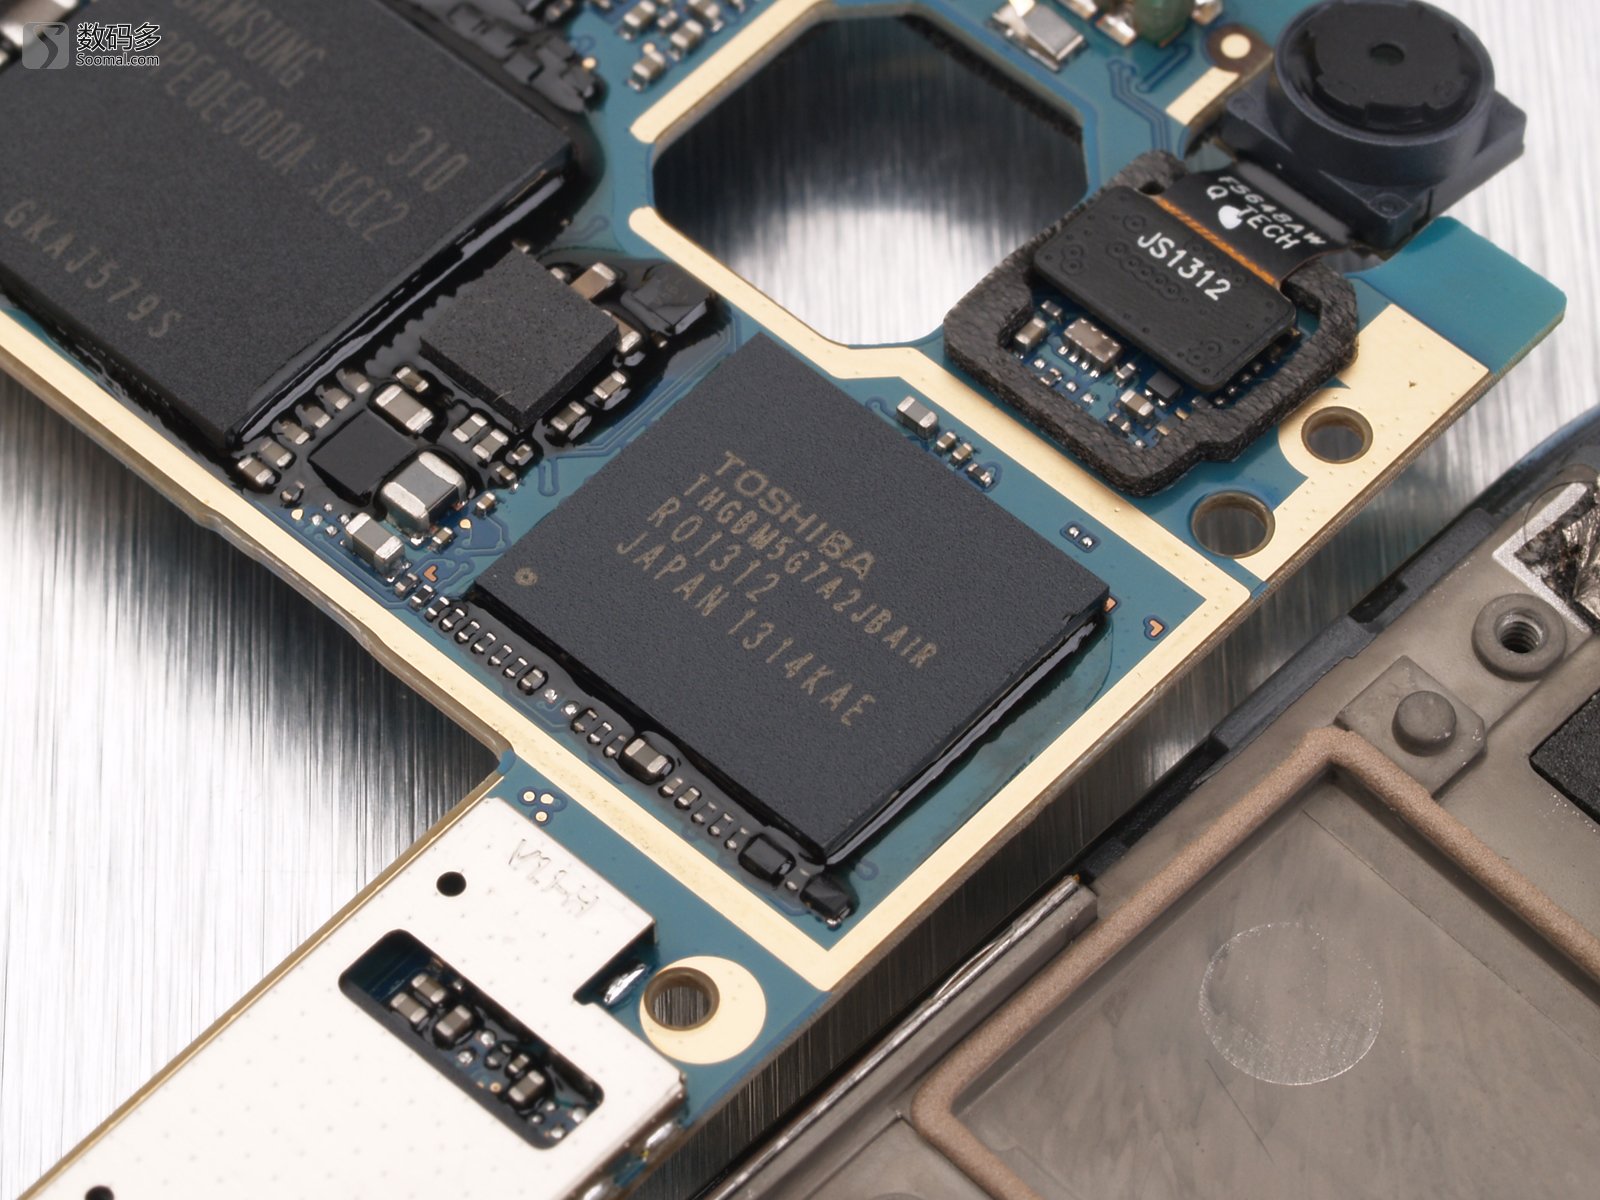 标题vivo xplay 智能手机-东芝emmc存储芯片 图片说明